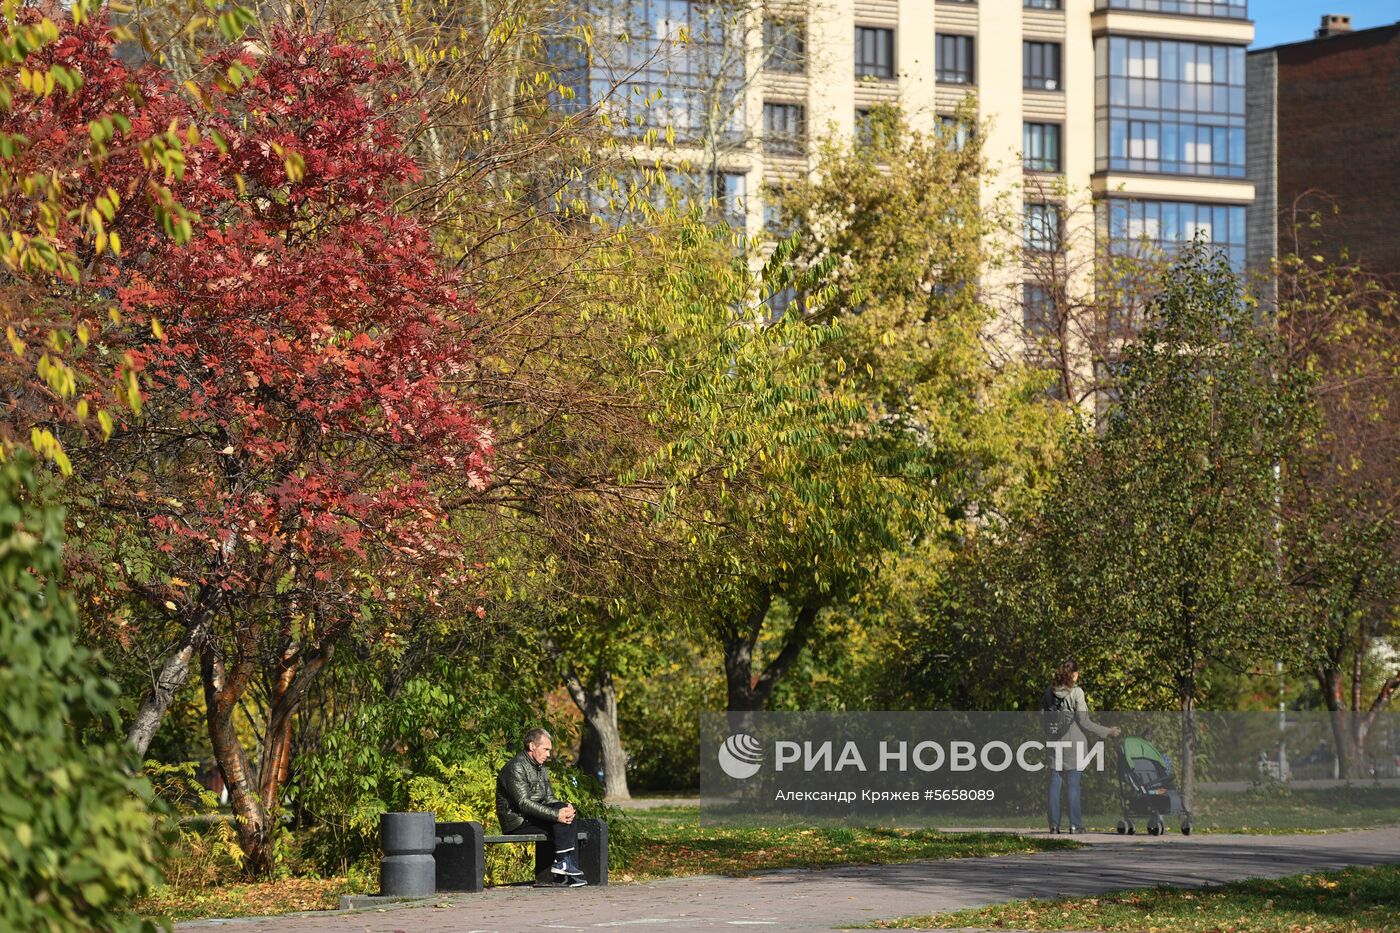 Осень в Новосибирской области